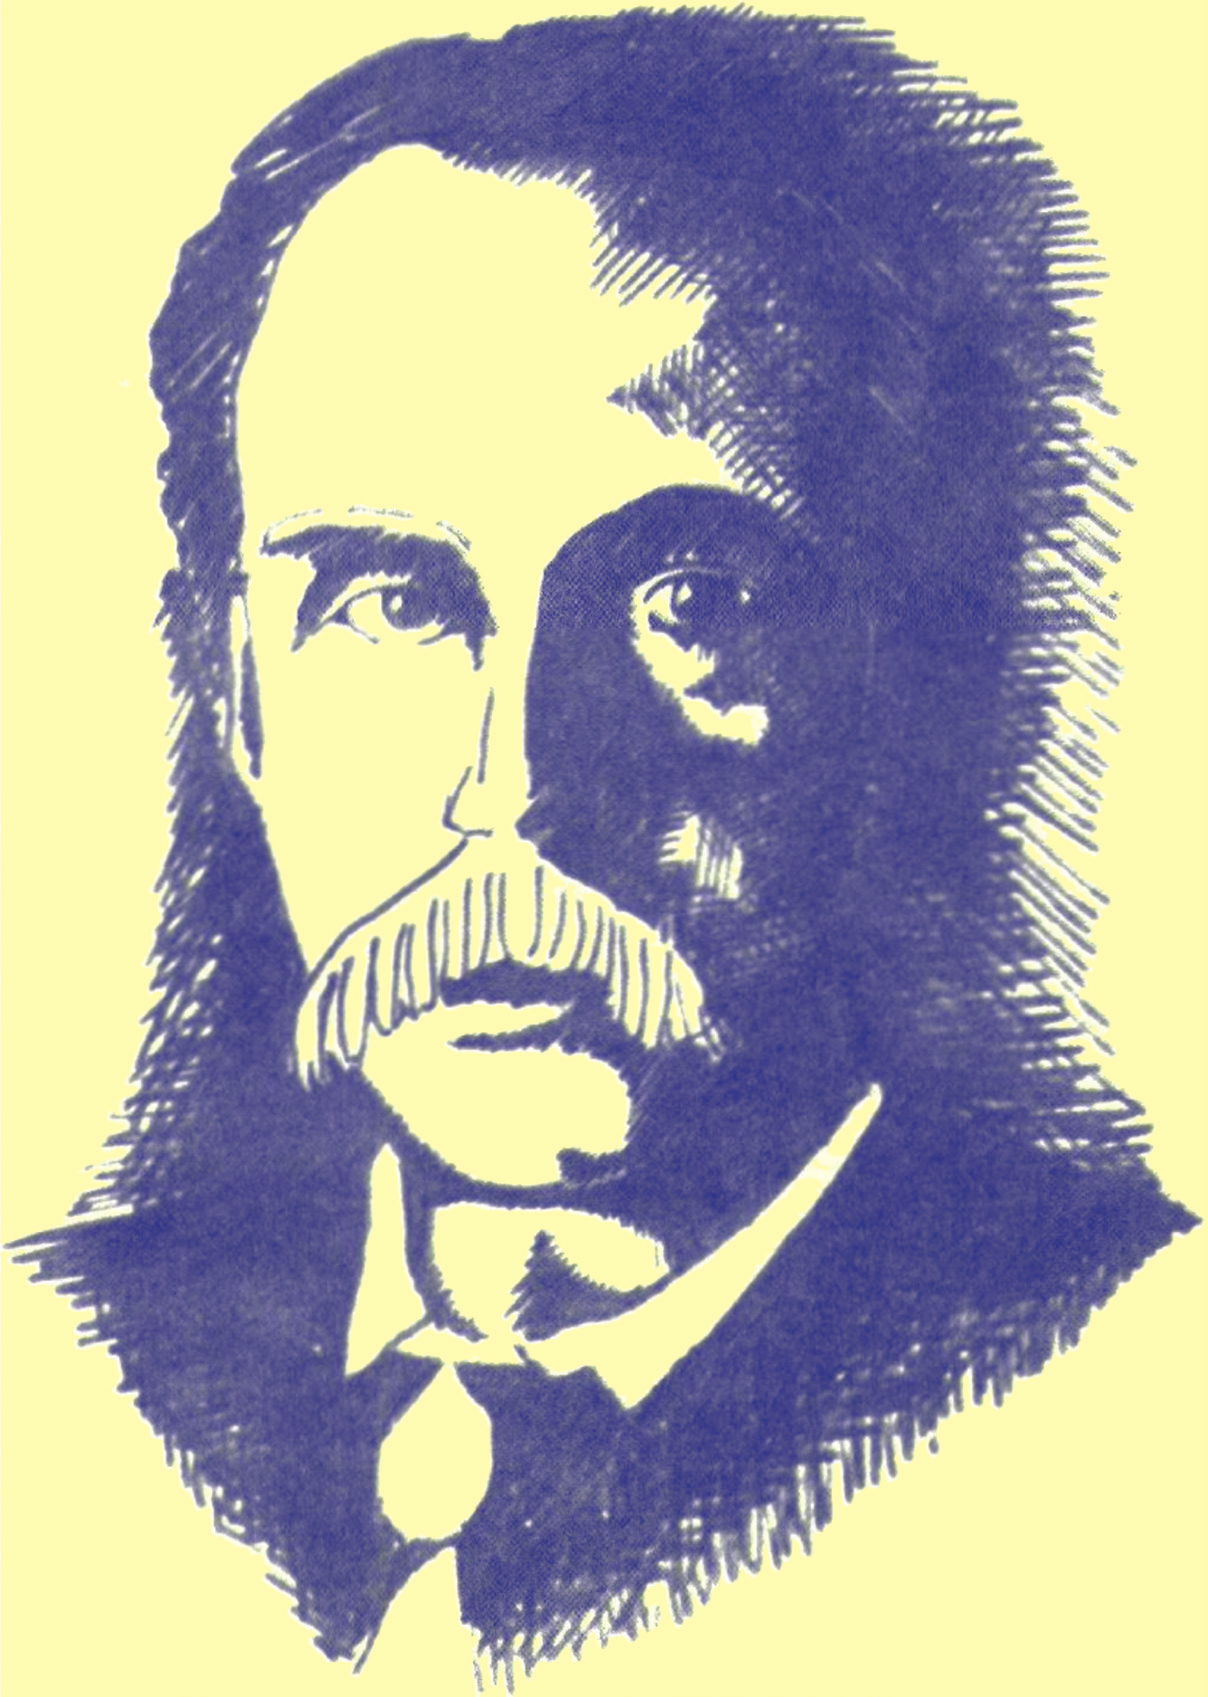 Ο Άλφρεντ Μάρσαλ (1842-1924) άσκησε μεγάλη επίδραση στην ανάπτυξη και εξέλιξη της οικονομικής σκέψης κυρίως στο πρόβλημα του